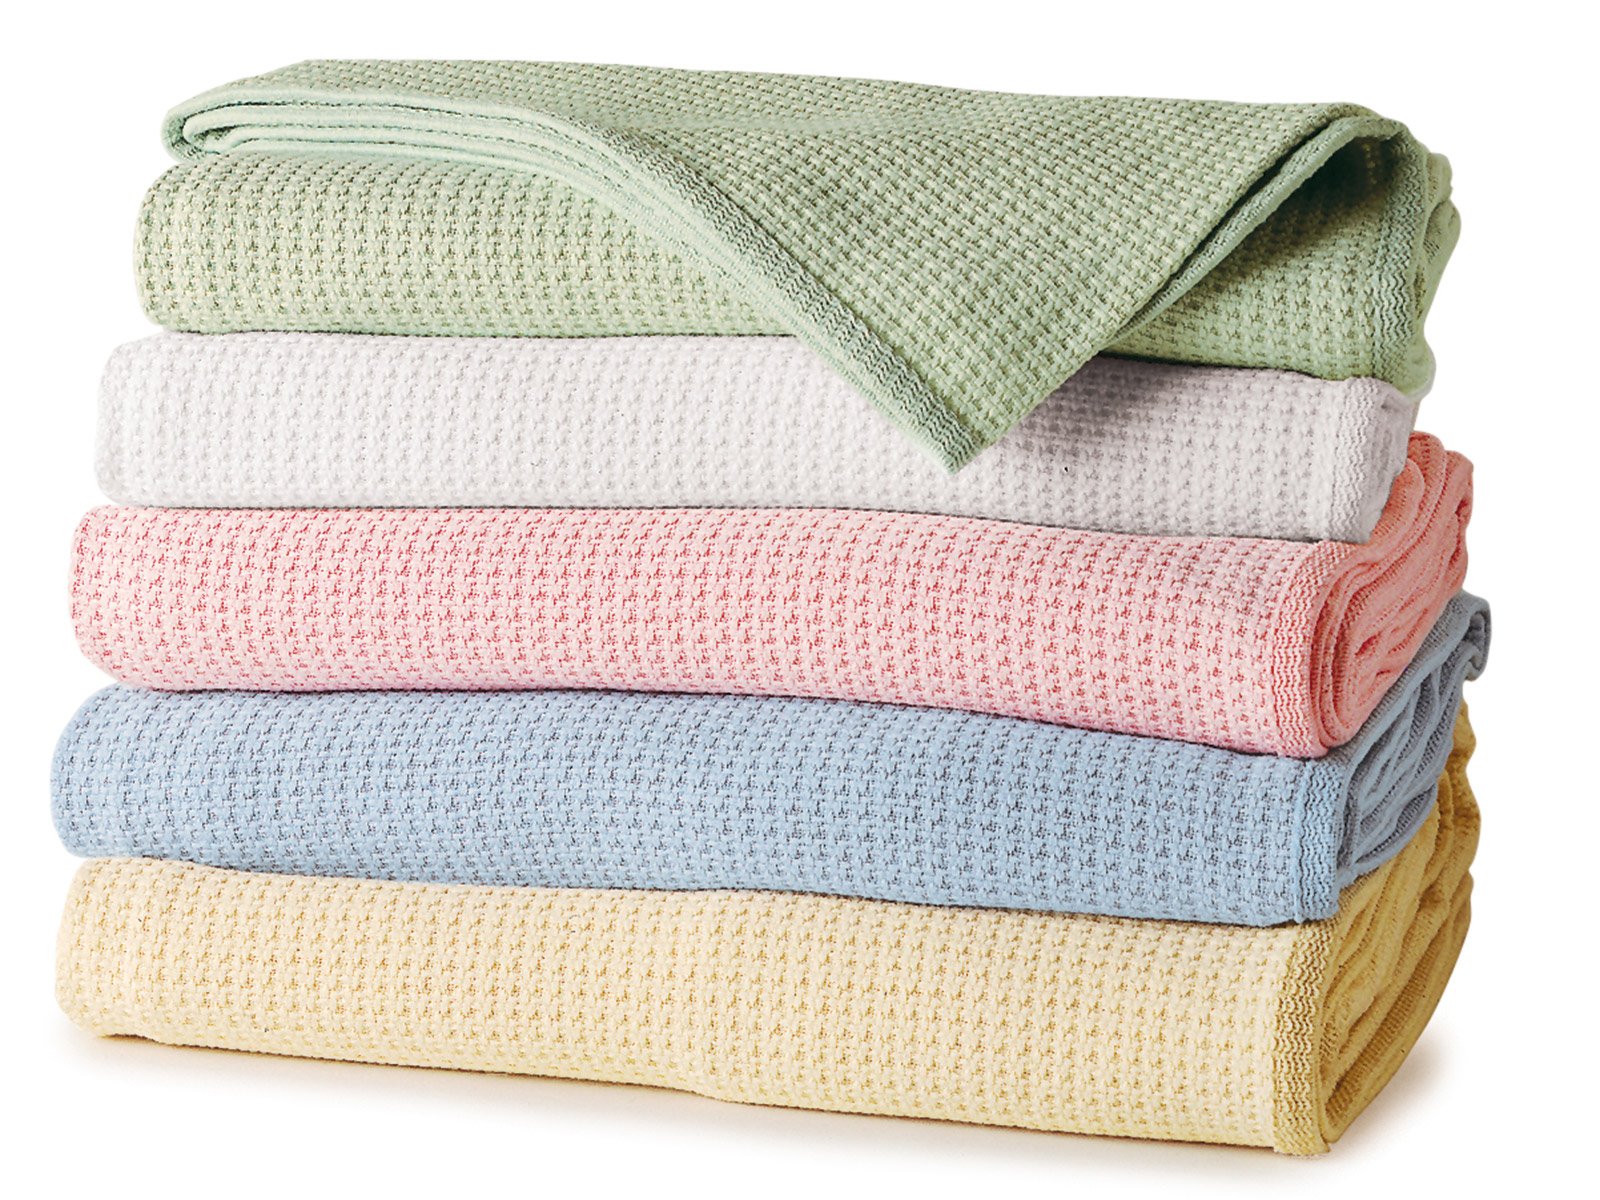 Textile полотенце. Сложенное полотенце. Стопка полотенец. Стопка пледов. Полотенце одеяло.